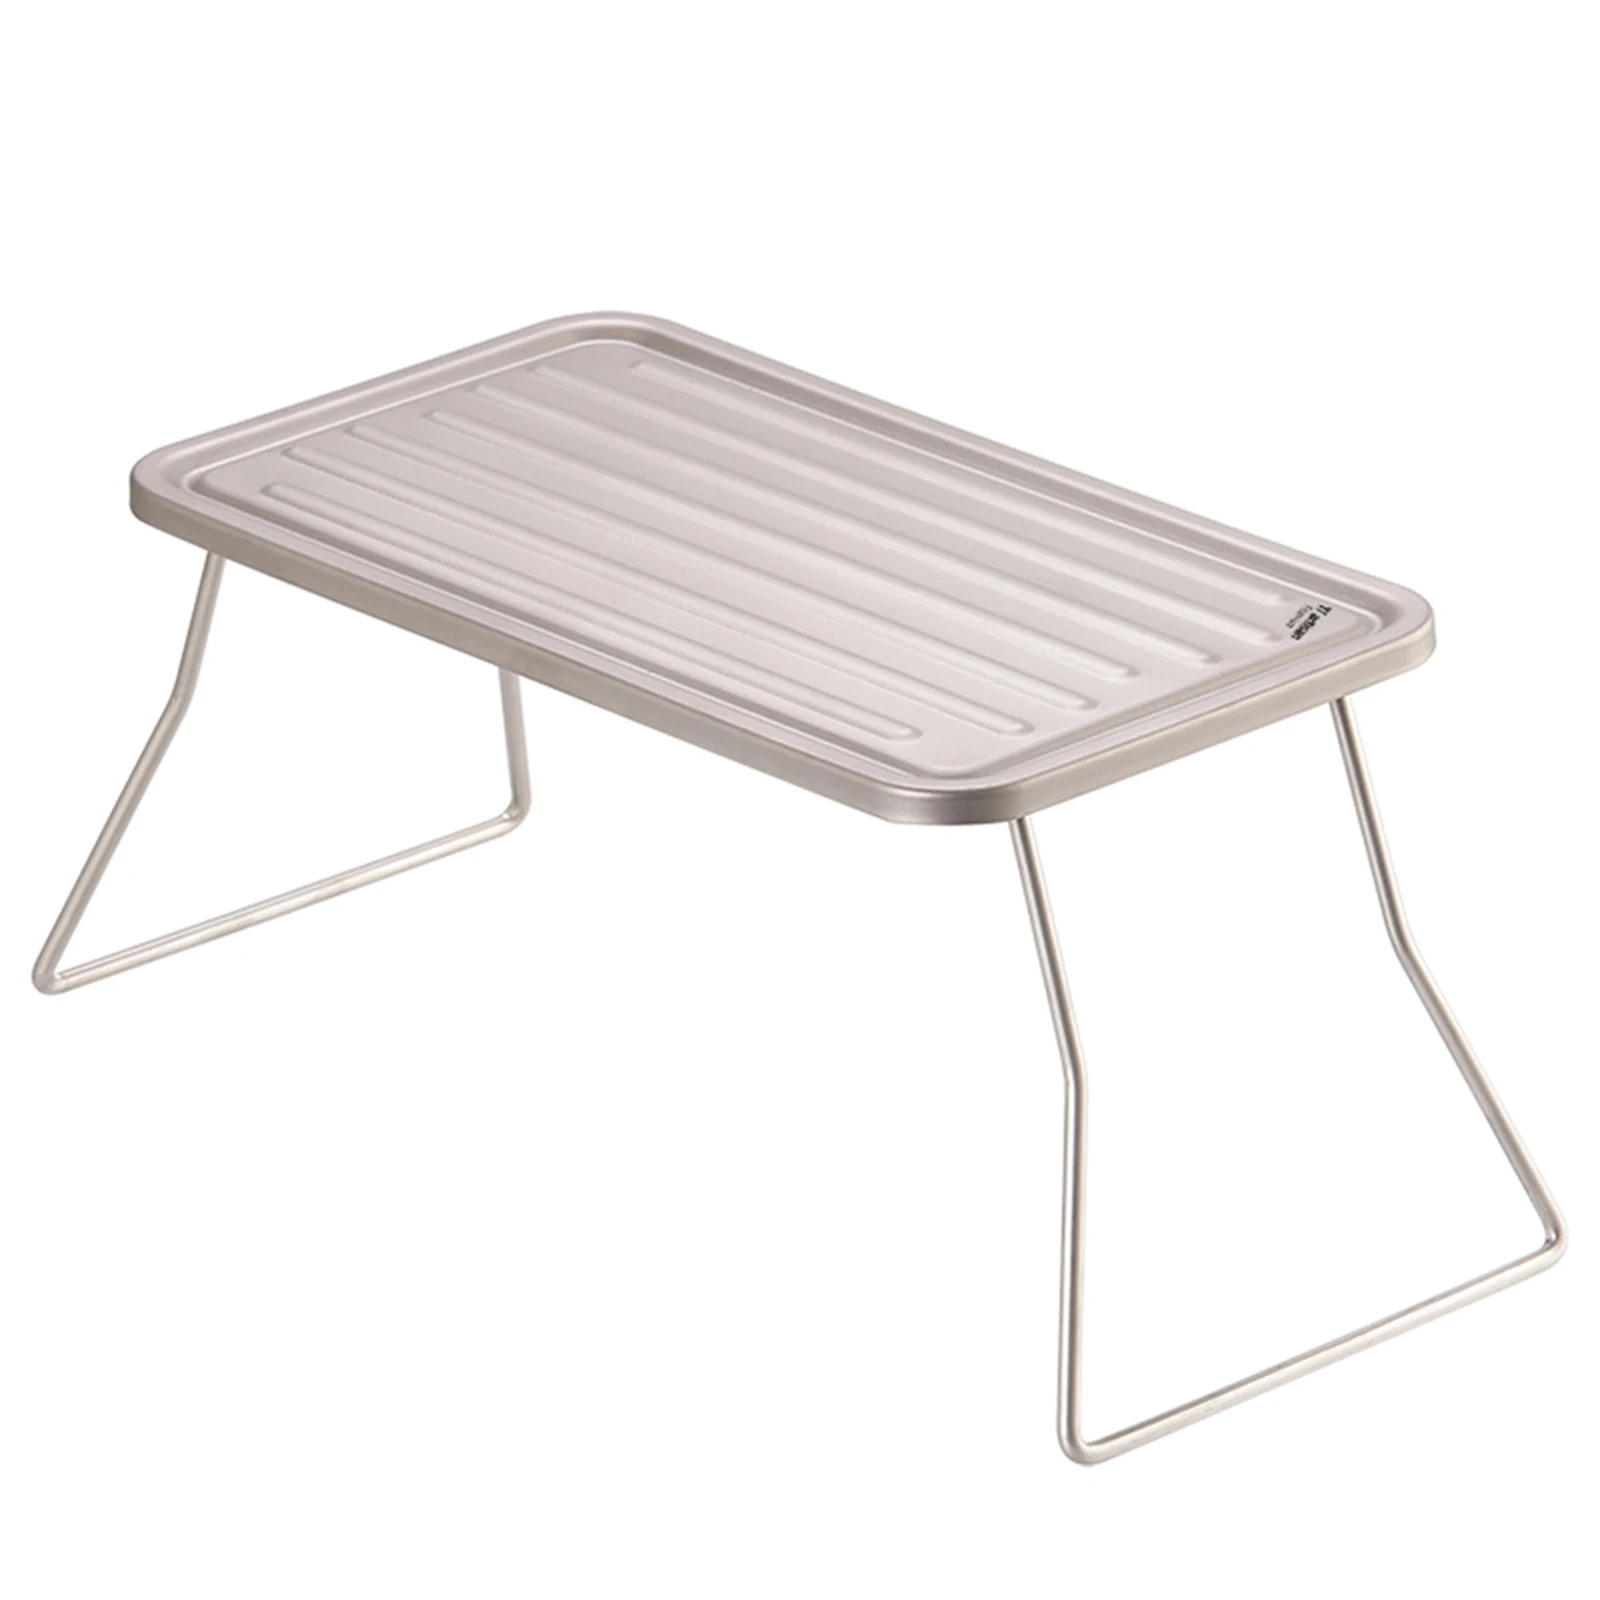 

Складной титановый стол для кемпинга, барбекю, гриля, 270*122*117 мм, легко носить с собой, для пешего туризма, пикника, дизайн ребристой пластины